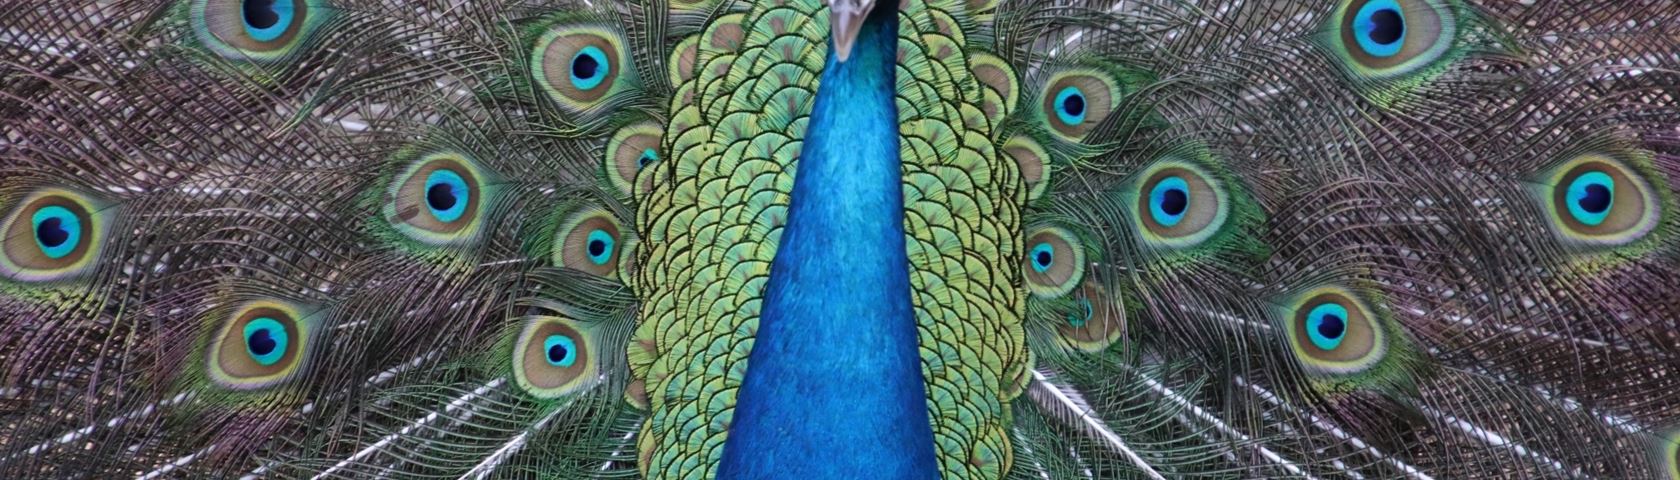 Peacock in Full Splendor